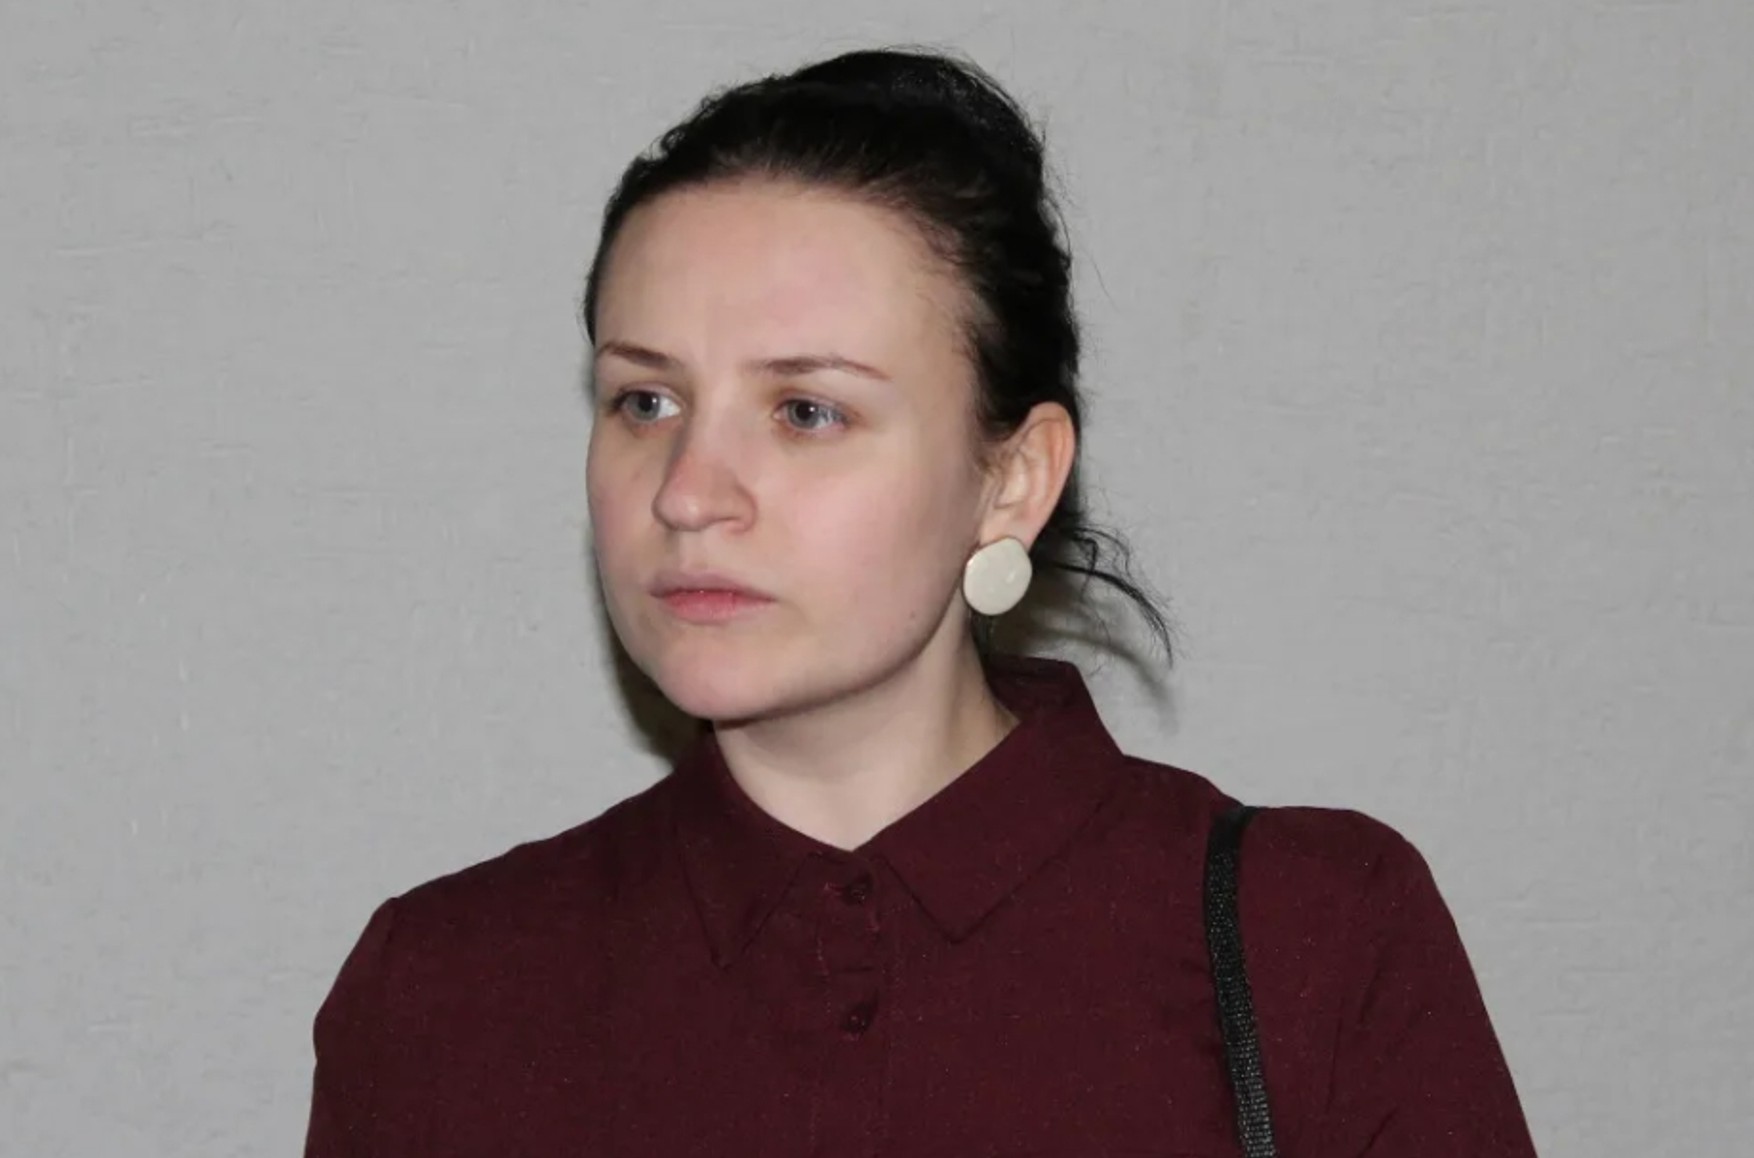 Мешканку Карелії Катерину Муранова, засуджену за виправдання тероризму, виключили зі списку терористів